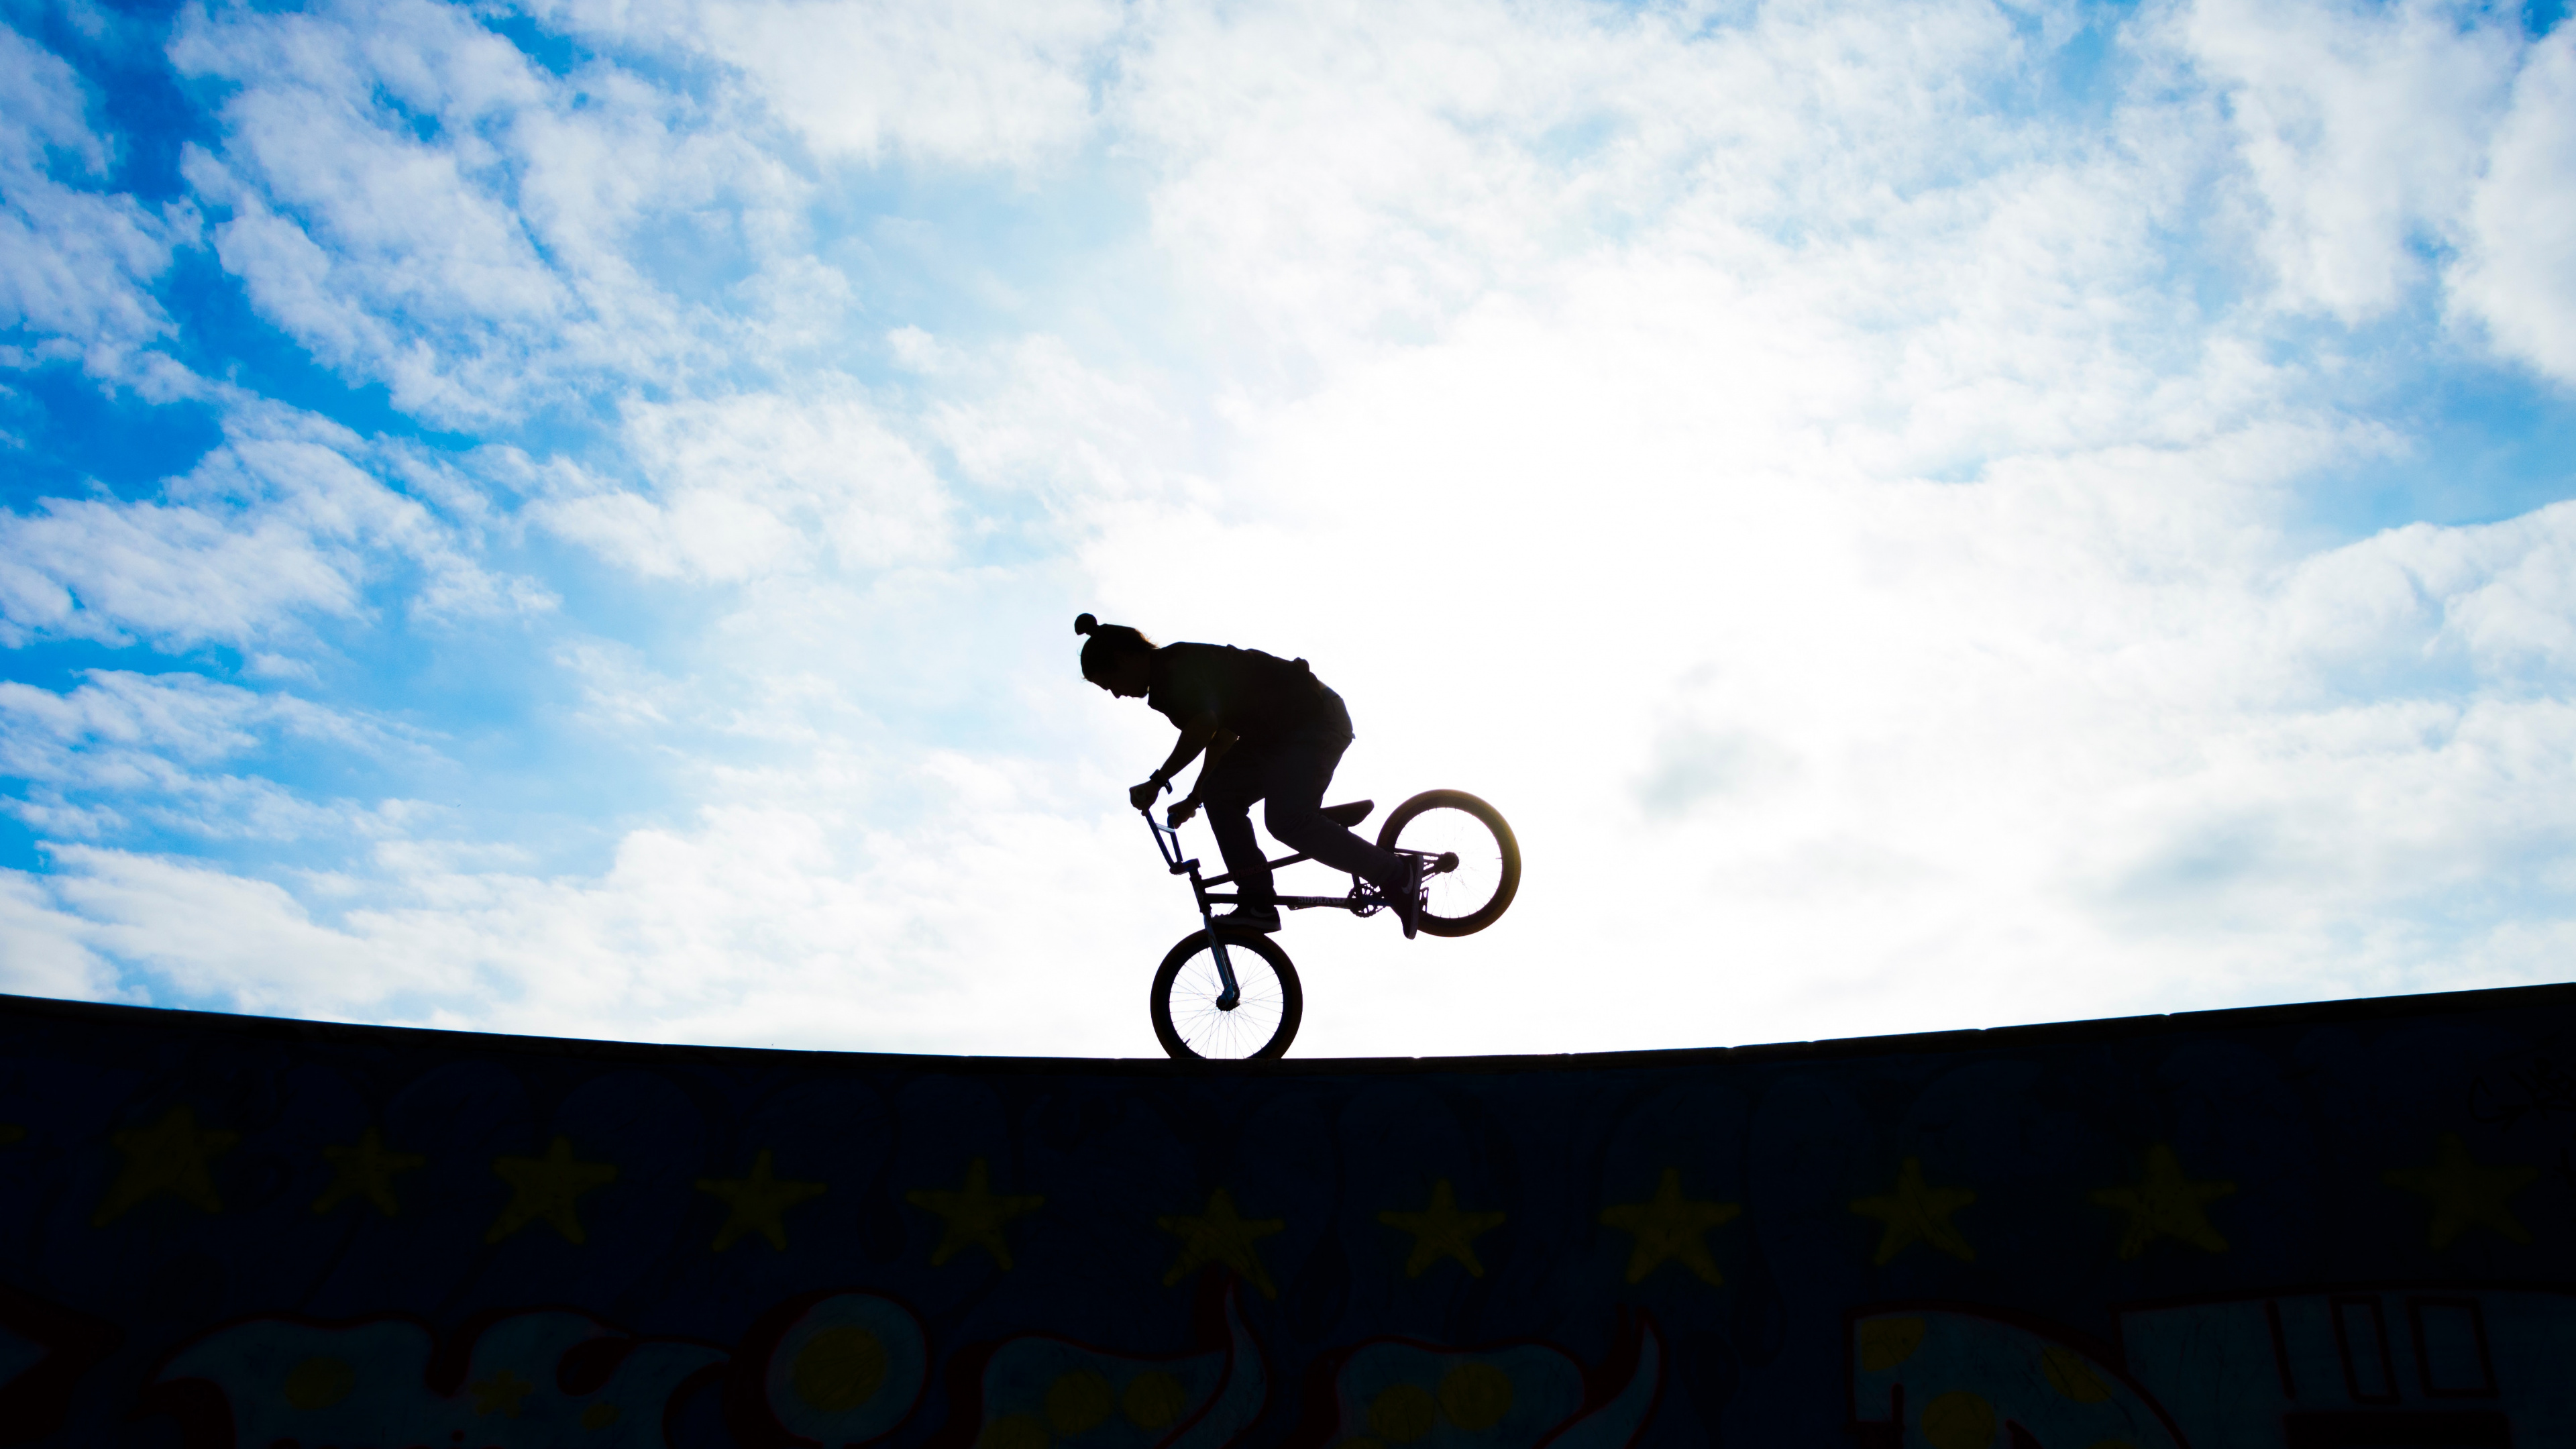 Man Riding Bicycle on Mid Air Sous Ciel Bleu Pendant la Journée. Wallpaper in 3840x2160 Resolution